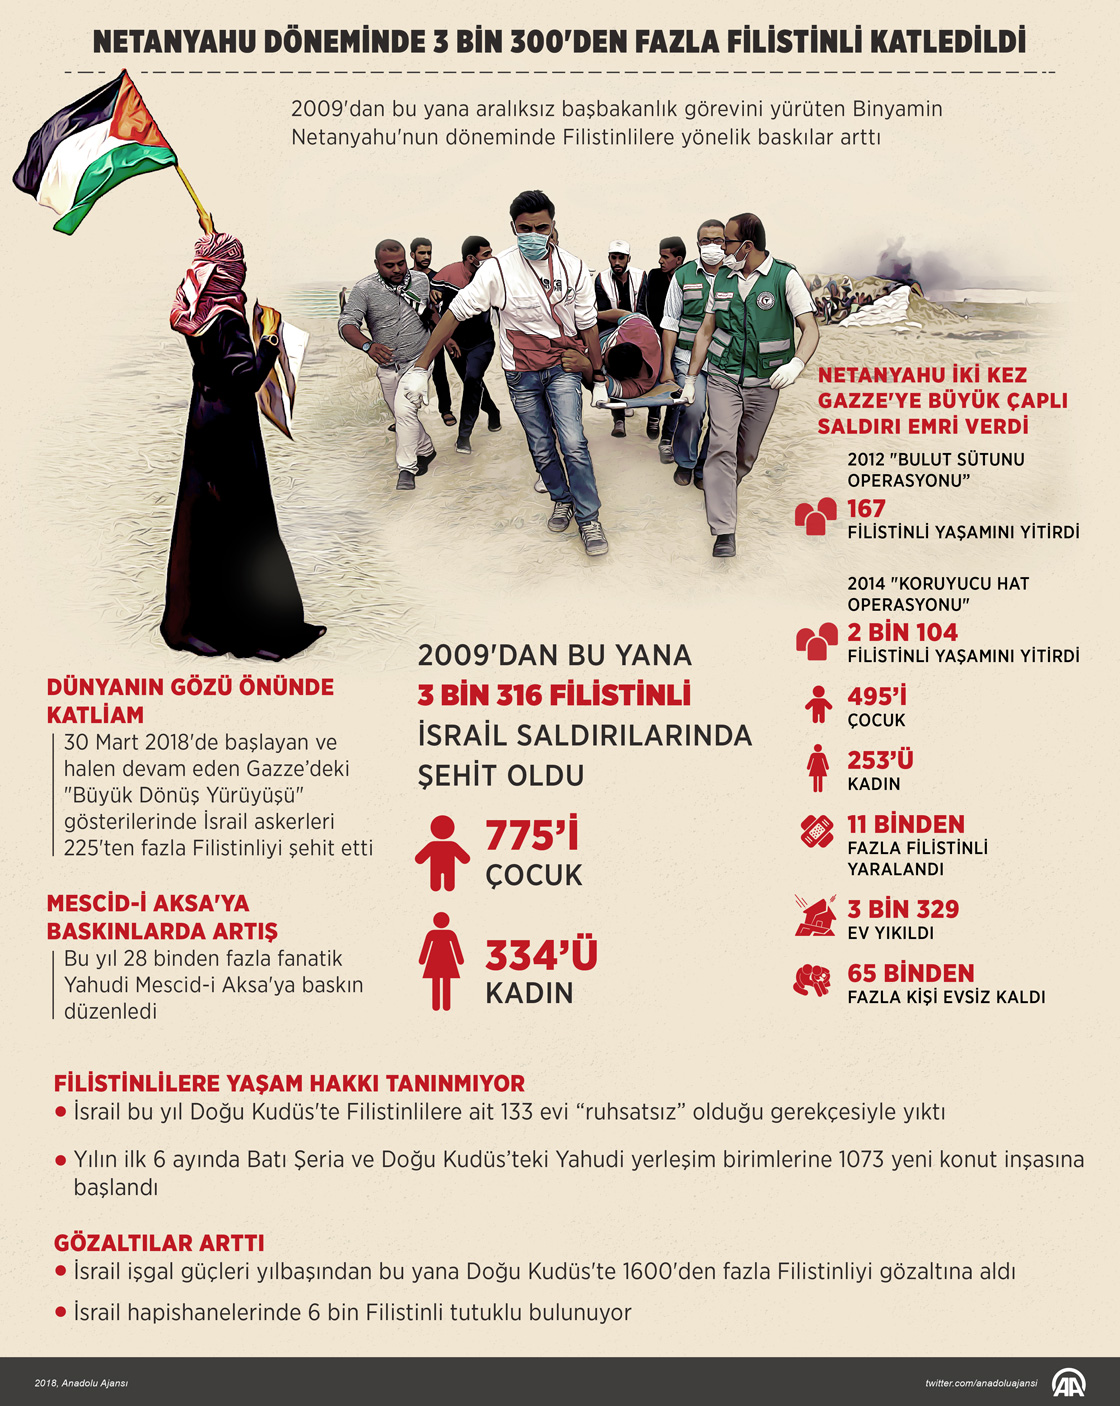 Netanyahu döneminde 3 bin 300'den fazla Filistinli katledildi